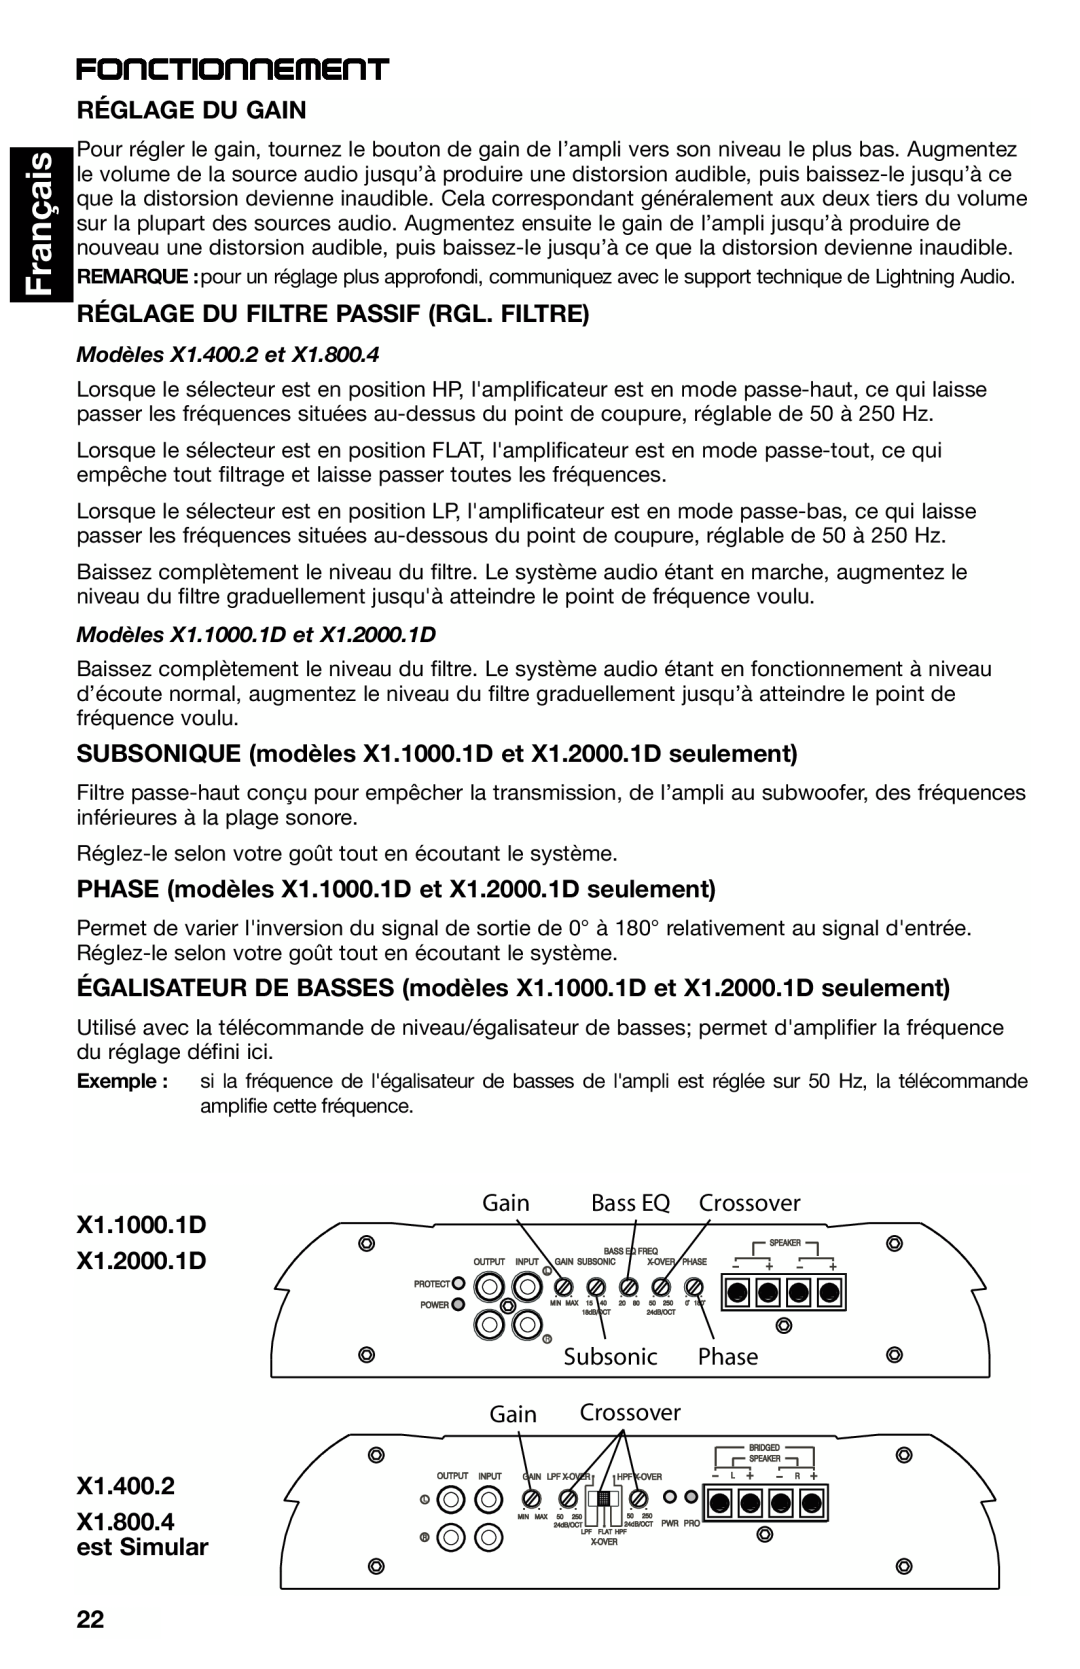 Lightning Audio X1.2000.1D, X1.800.4 manual Fonctionnement, Français, Réglage Du Gain, Réglage Du Filtre Passif Rgl. Filtre 